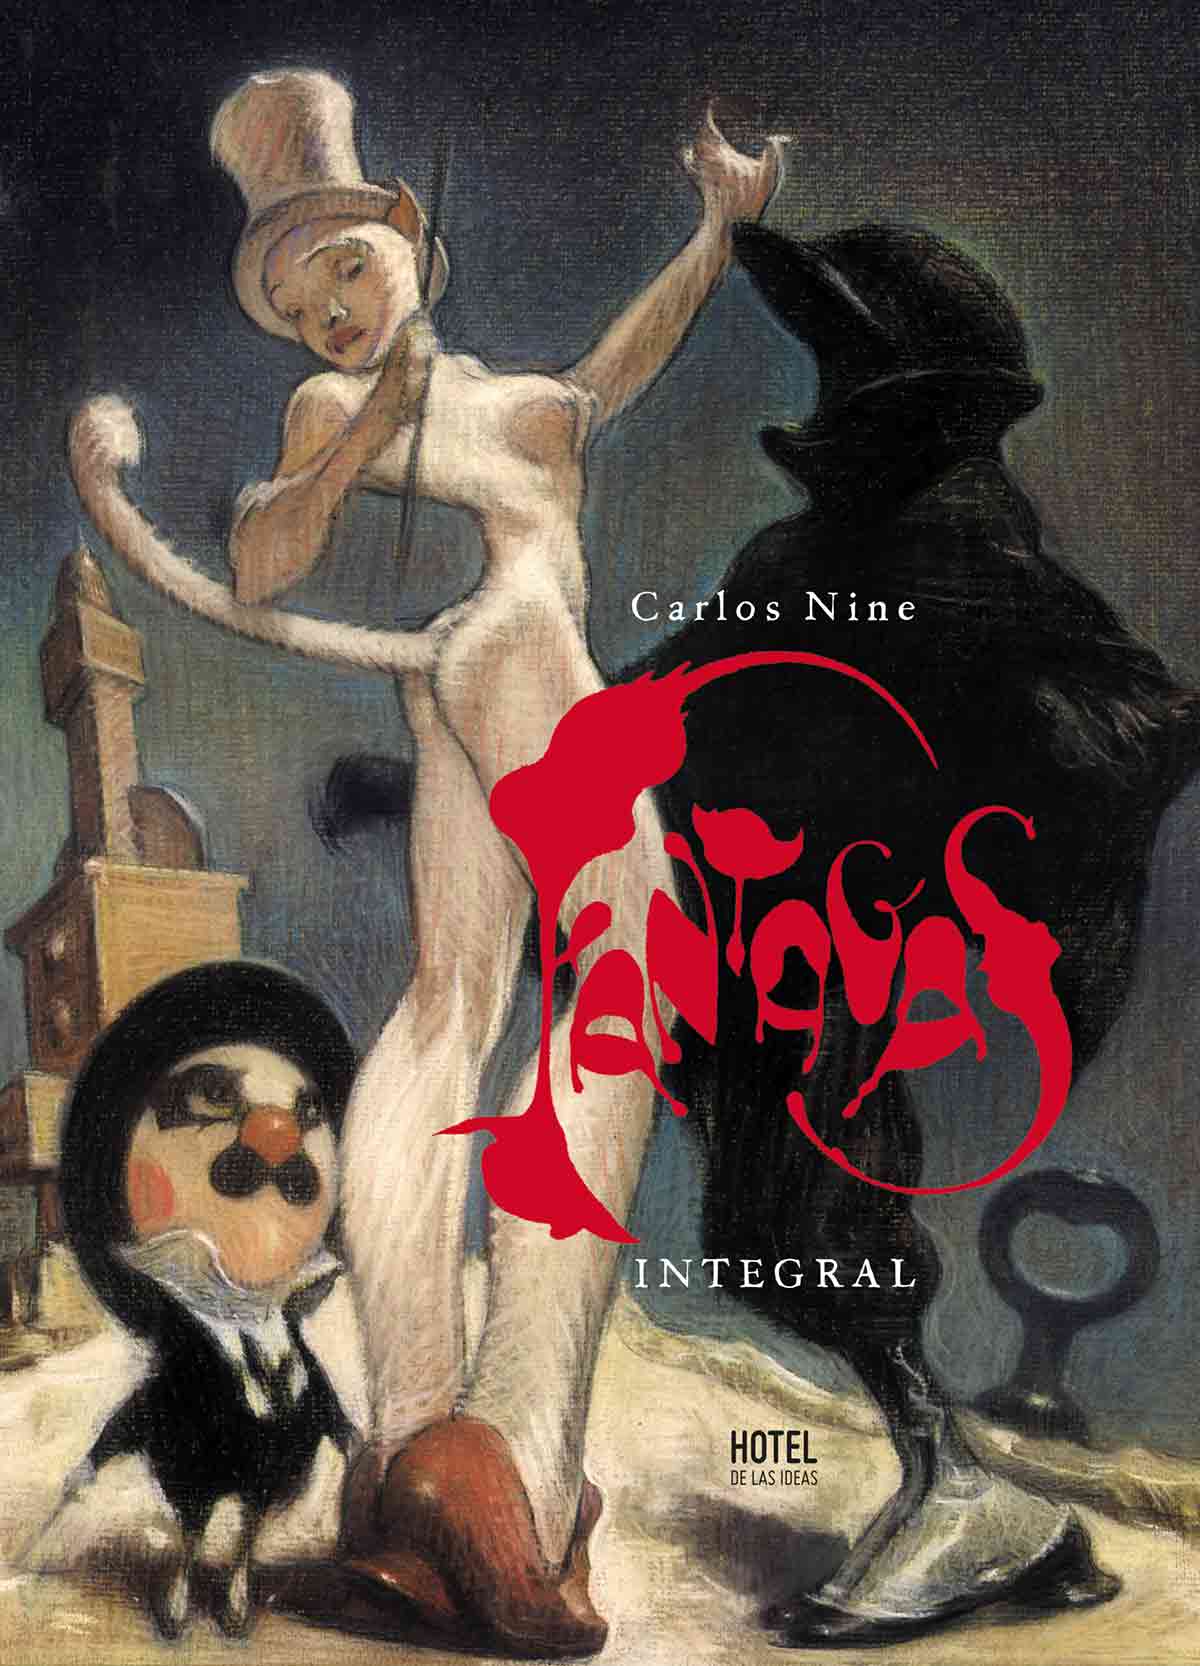 Fantagas, libro de Carlos Nine